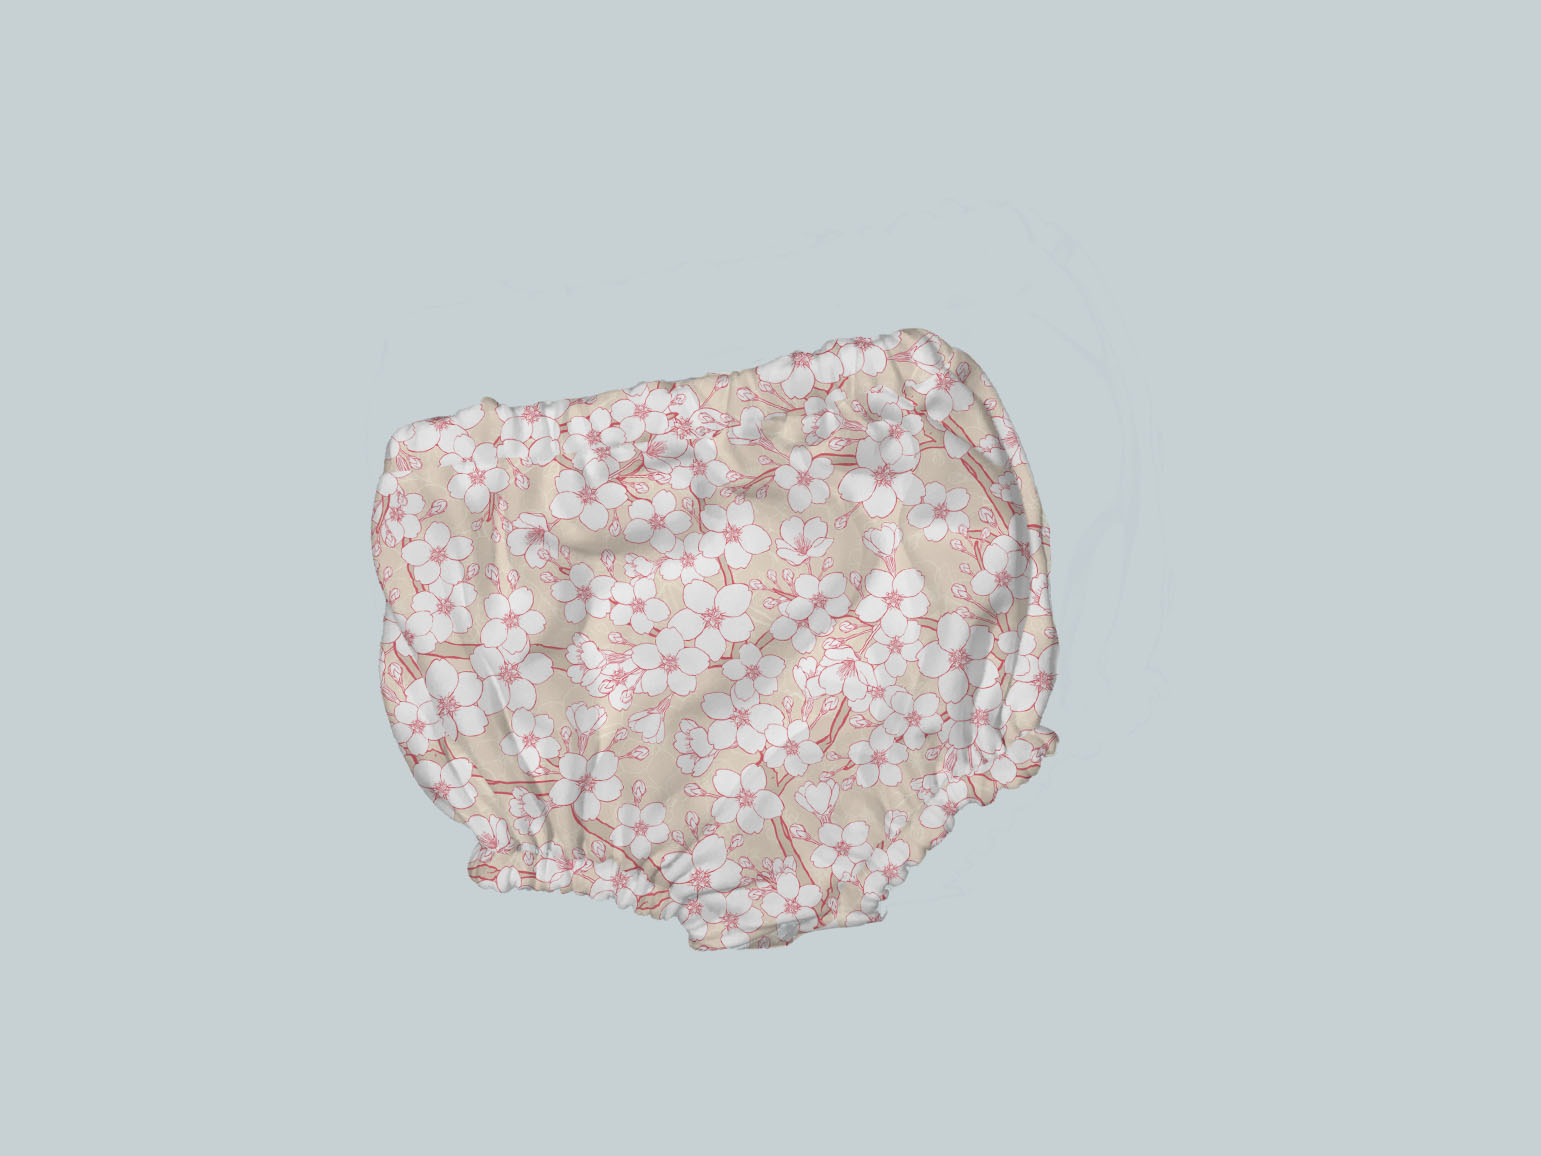 Bummies/Diaper Cover - Peachy Bloom